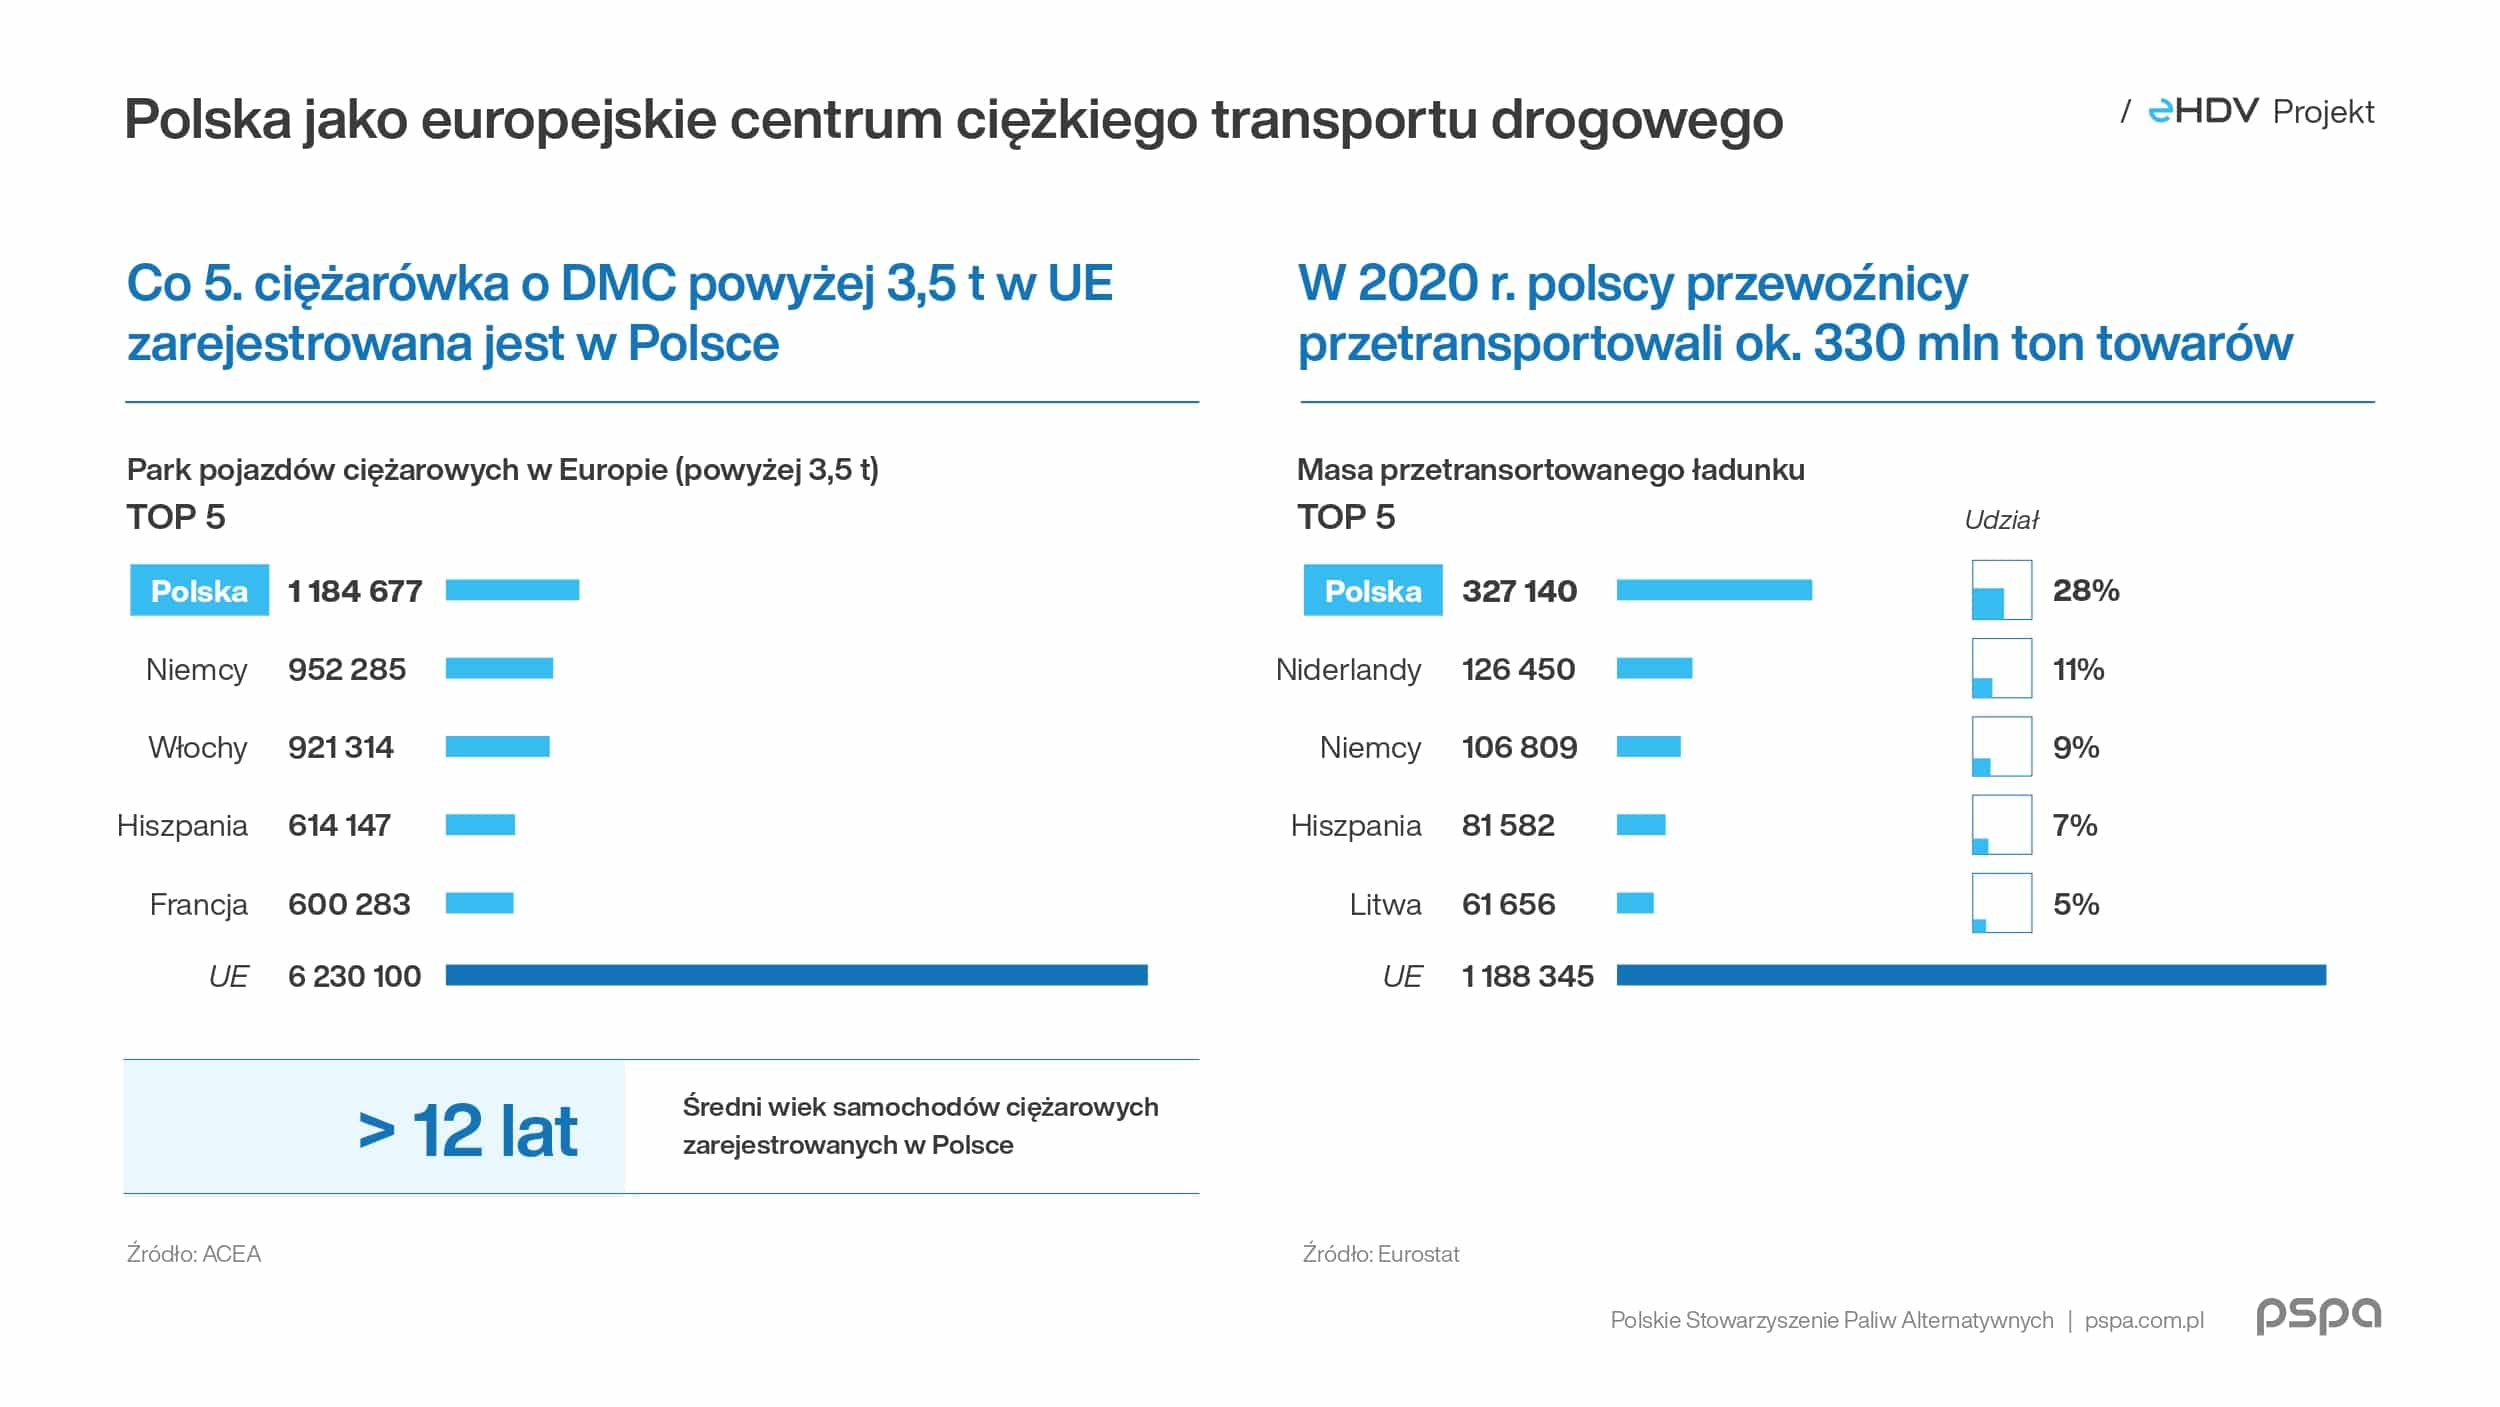 Pilotażowy projekt elektryfikacji ciężkiego transportu w Polsce